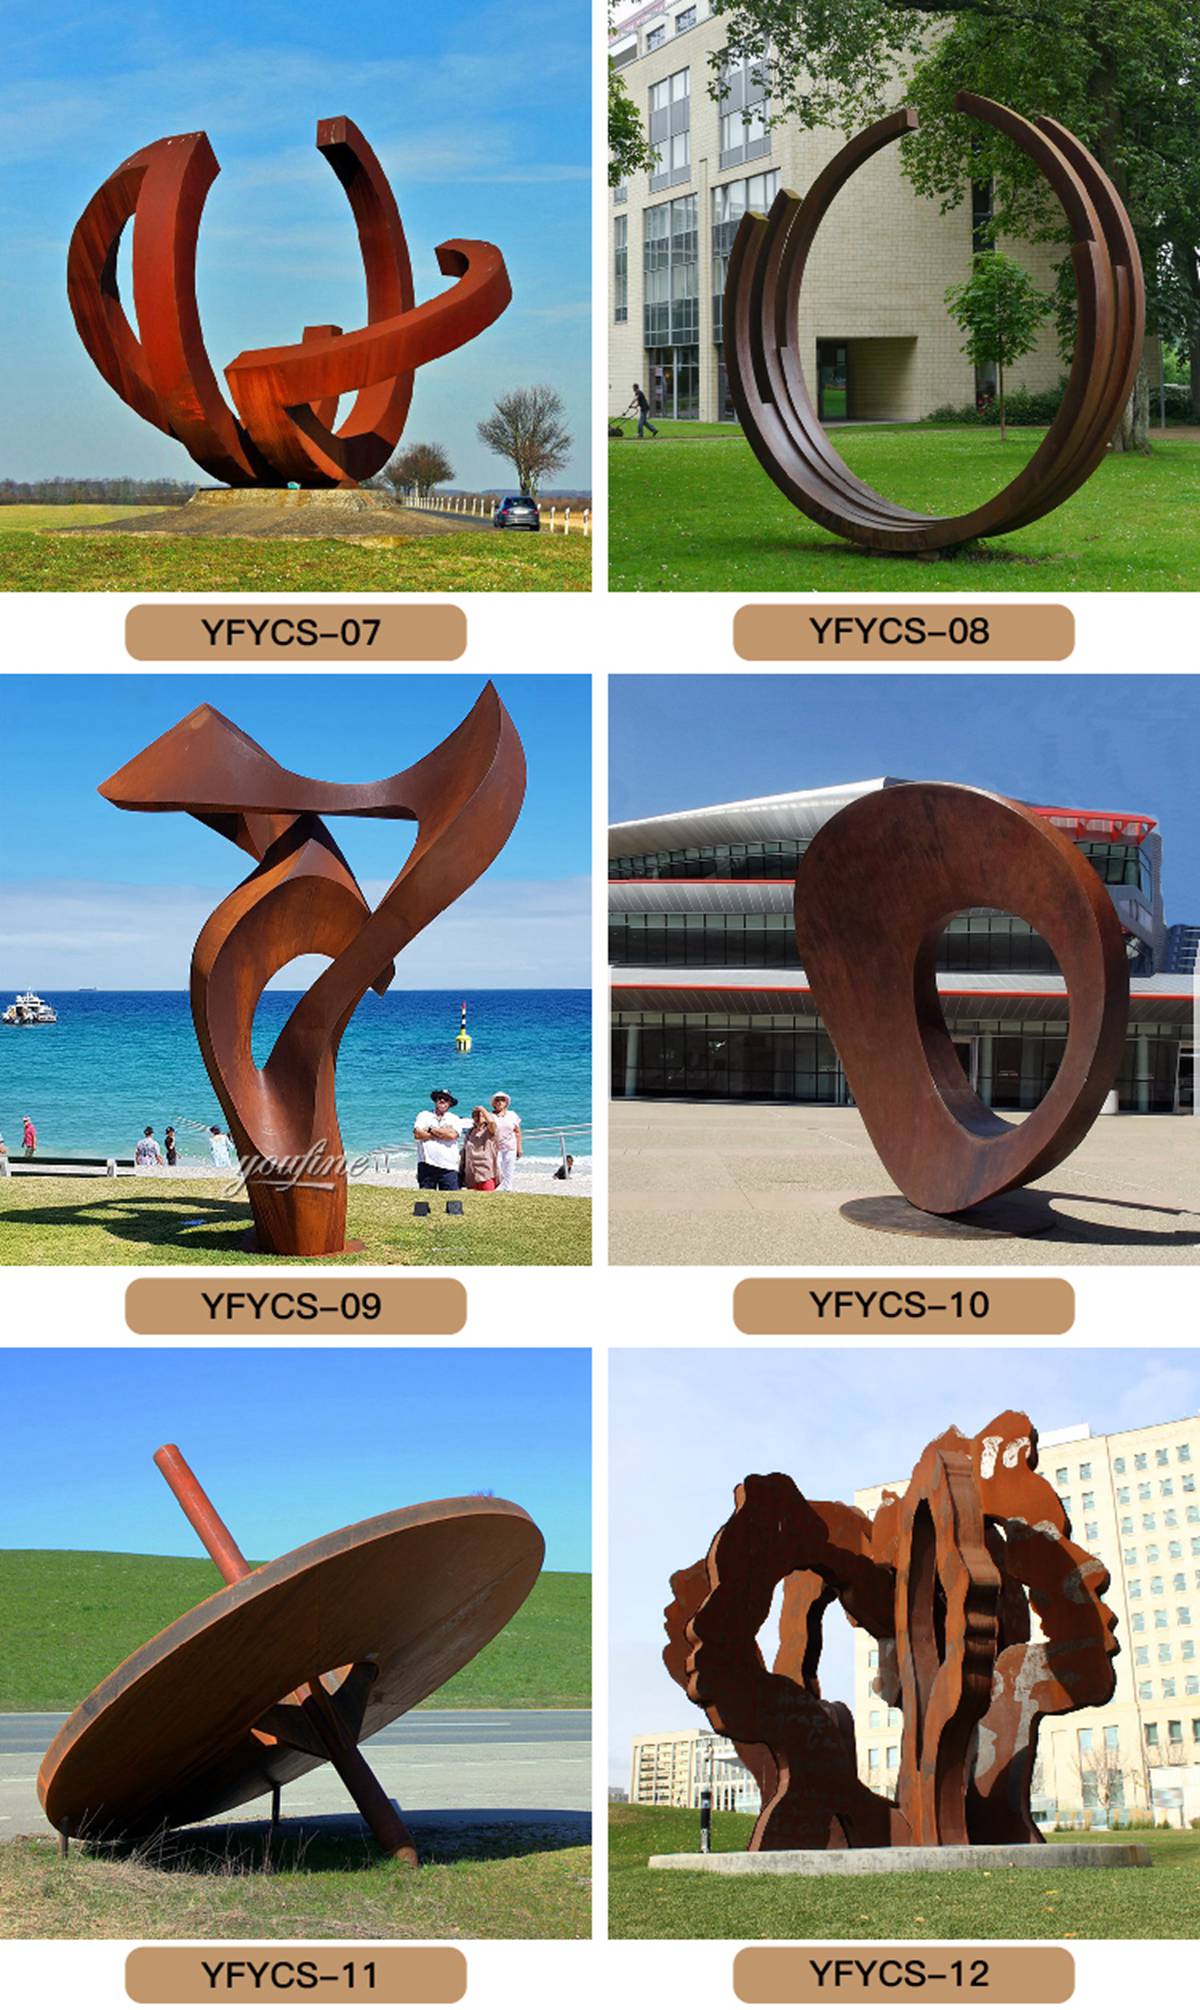 corten steel garden sculpture (4)